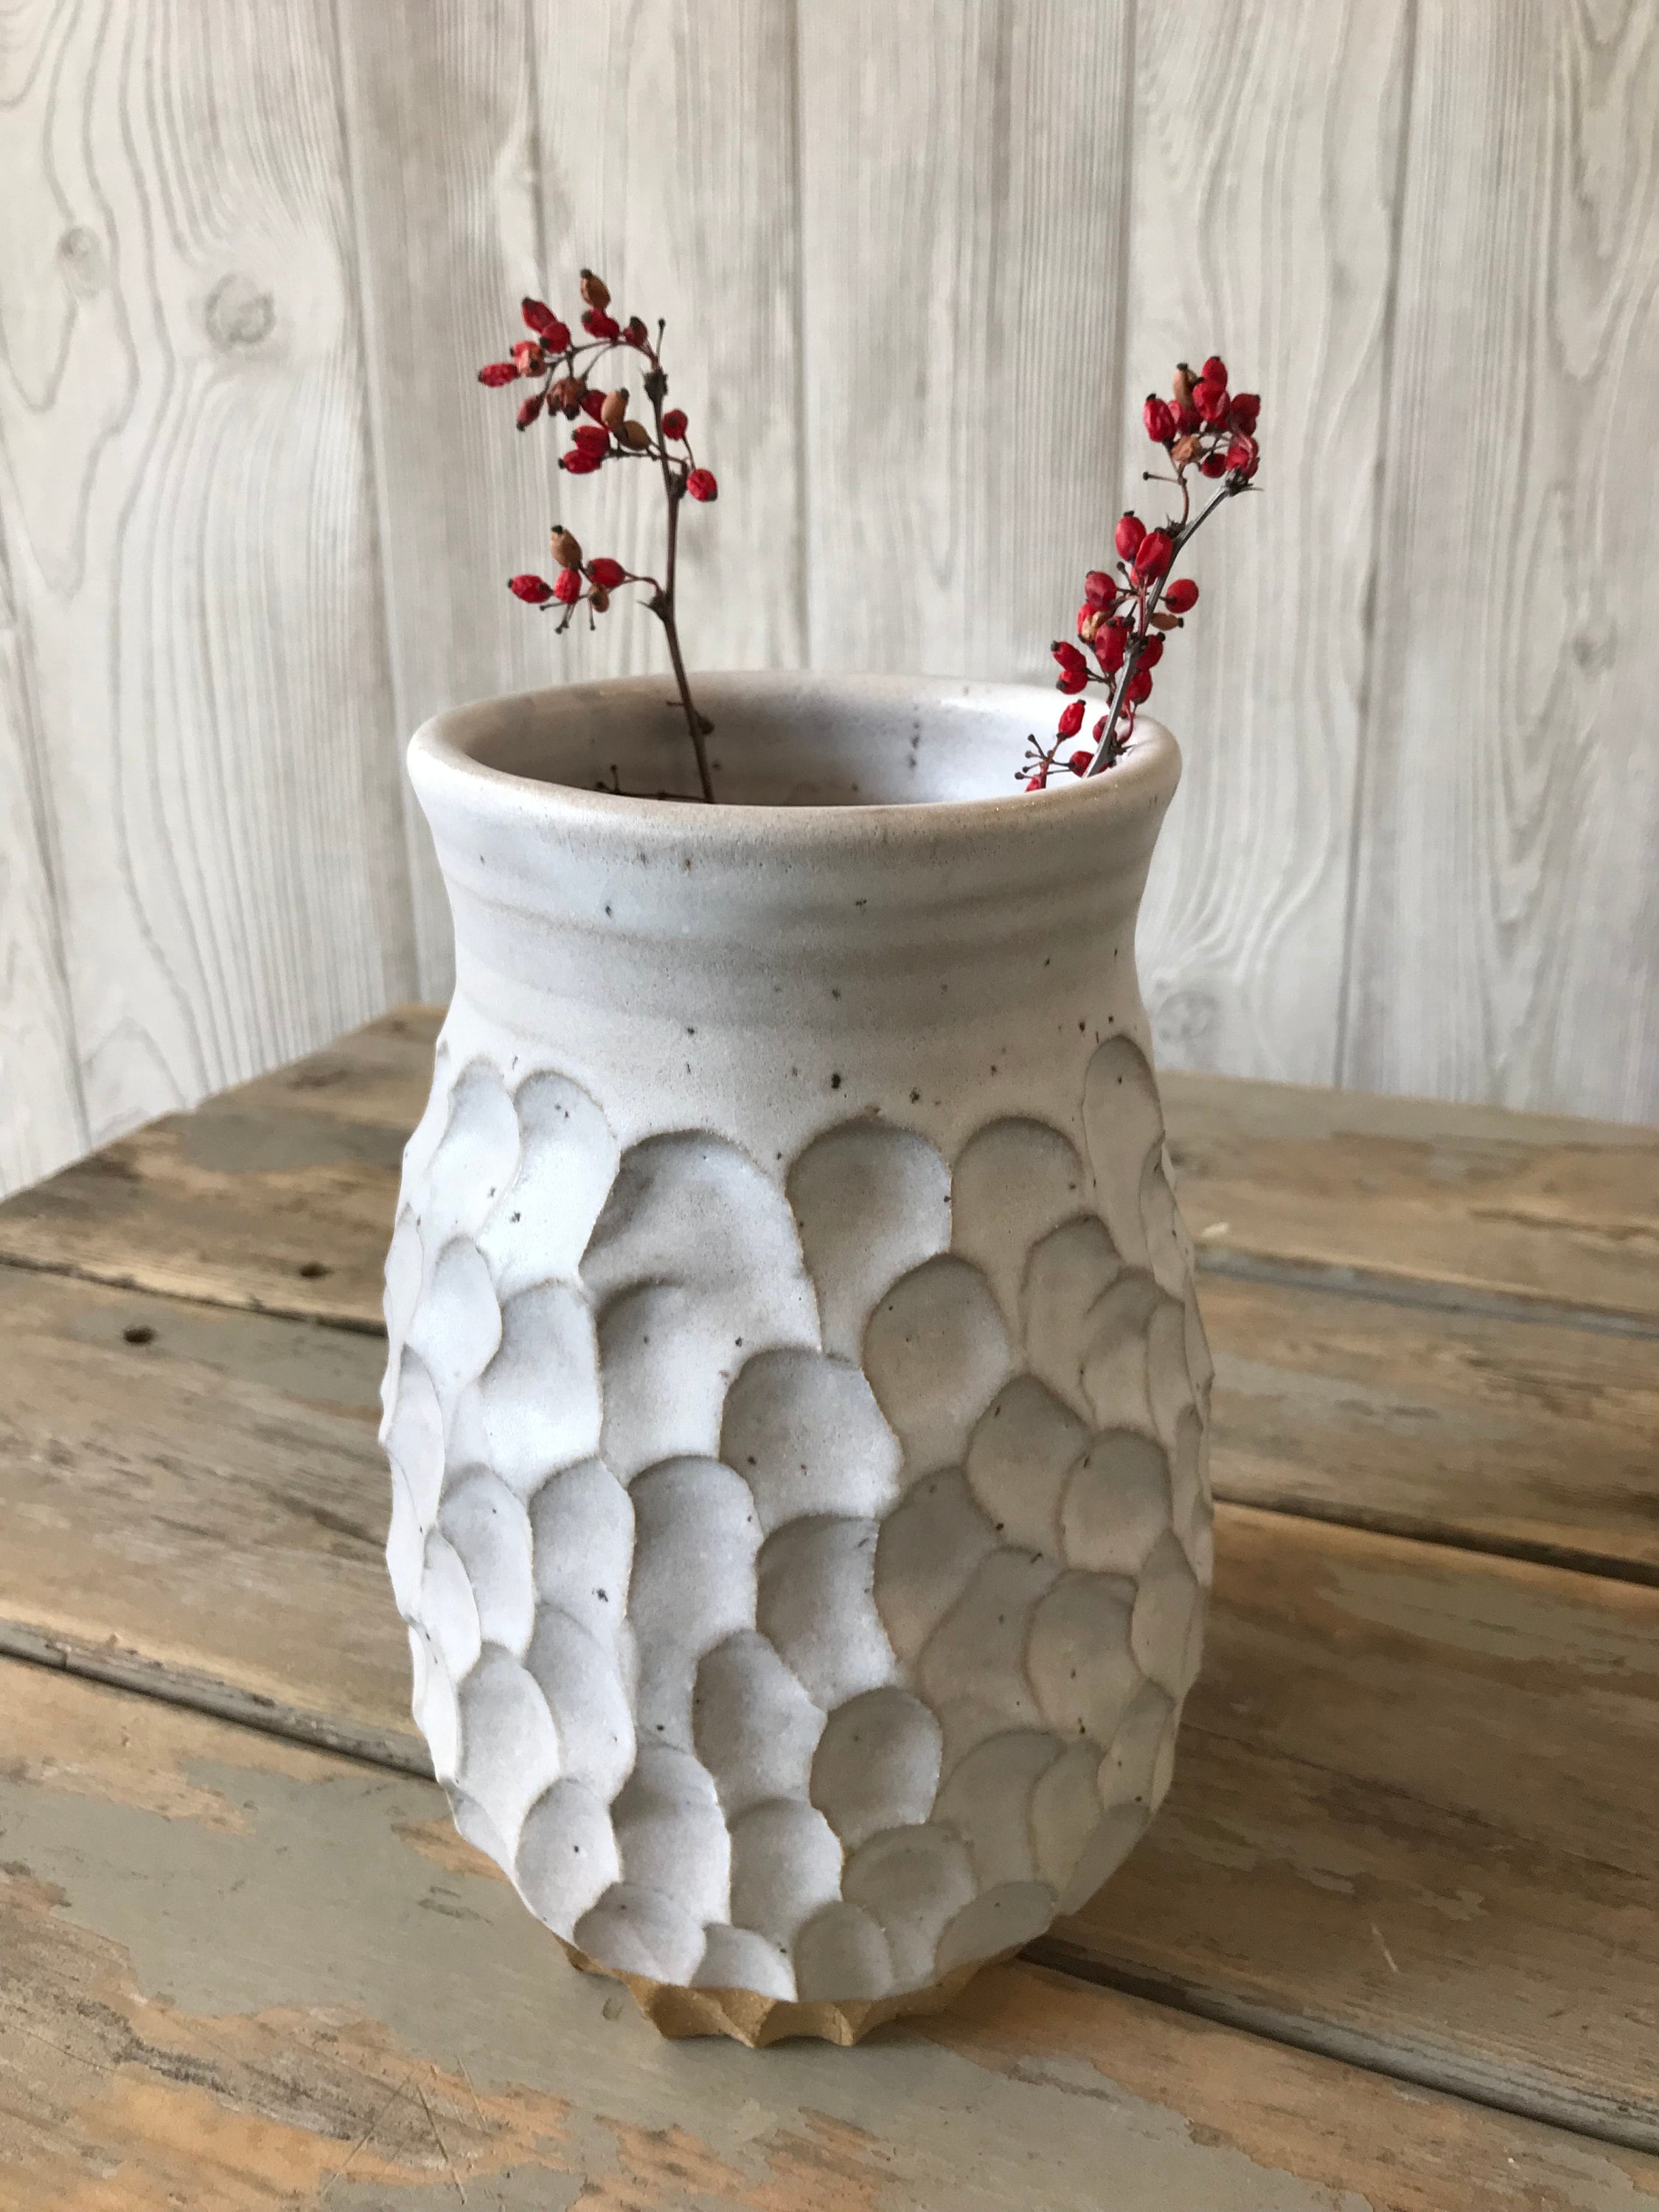 Ceramic Vase White Flower Vase (Handmade) Purse Ceramic Vases for Flowers  Cute Clover Vases for Decor Makeup Brush Holder Organizer&Pen Holder